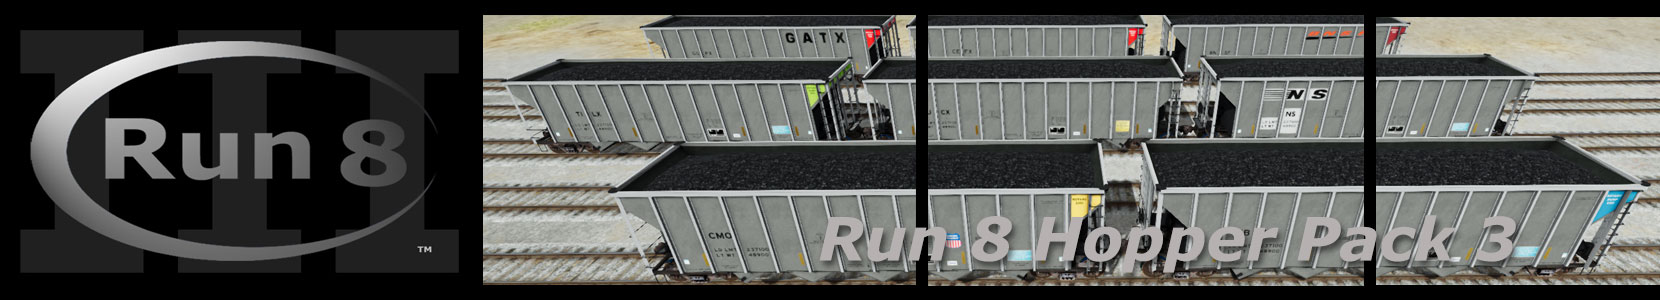 Run8 Train Simulator Open Hopper Pack 3